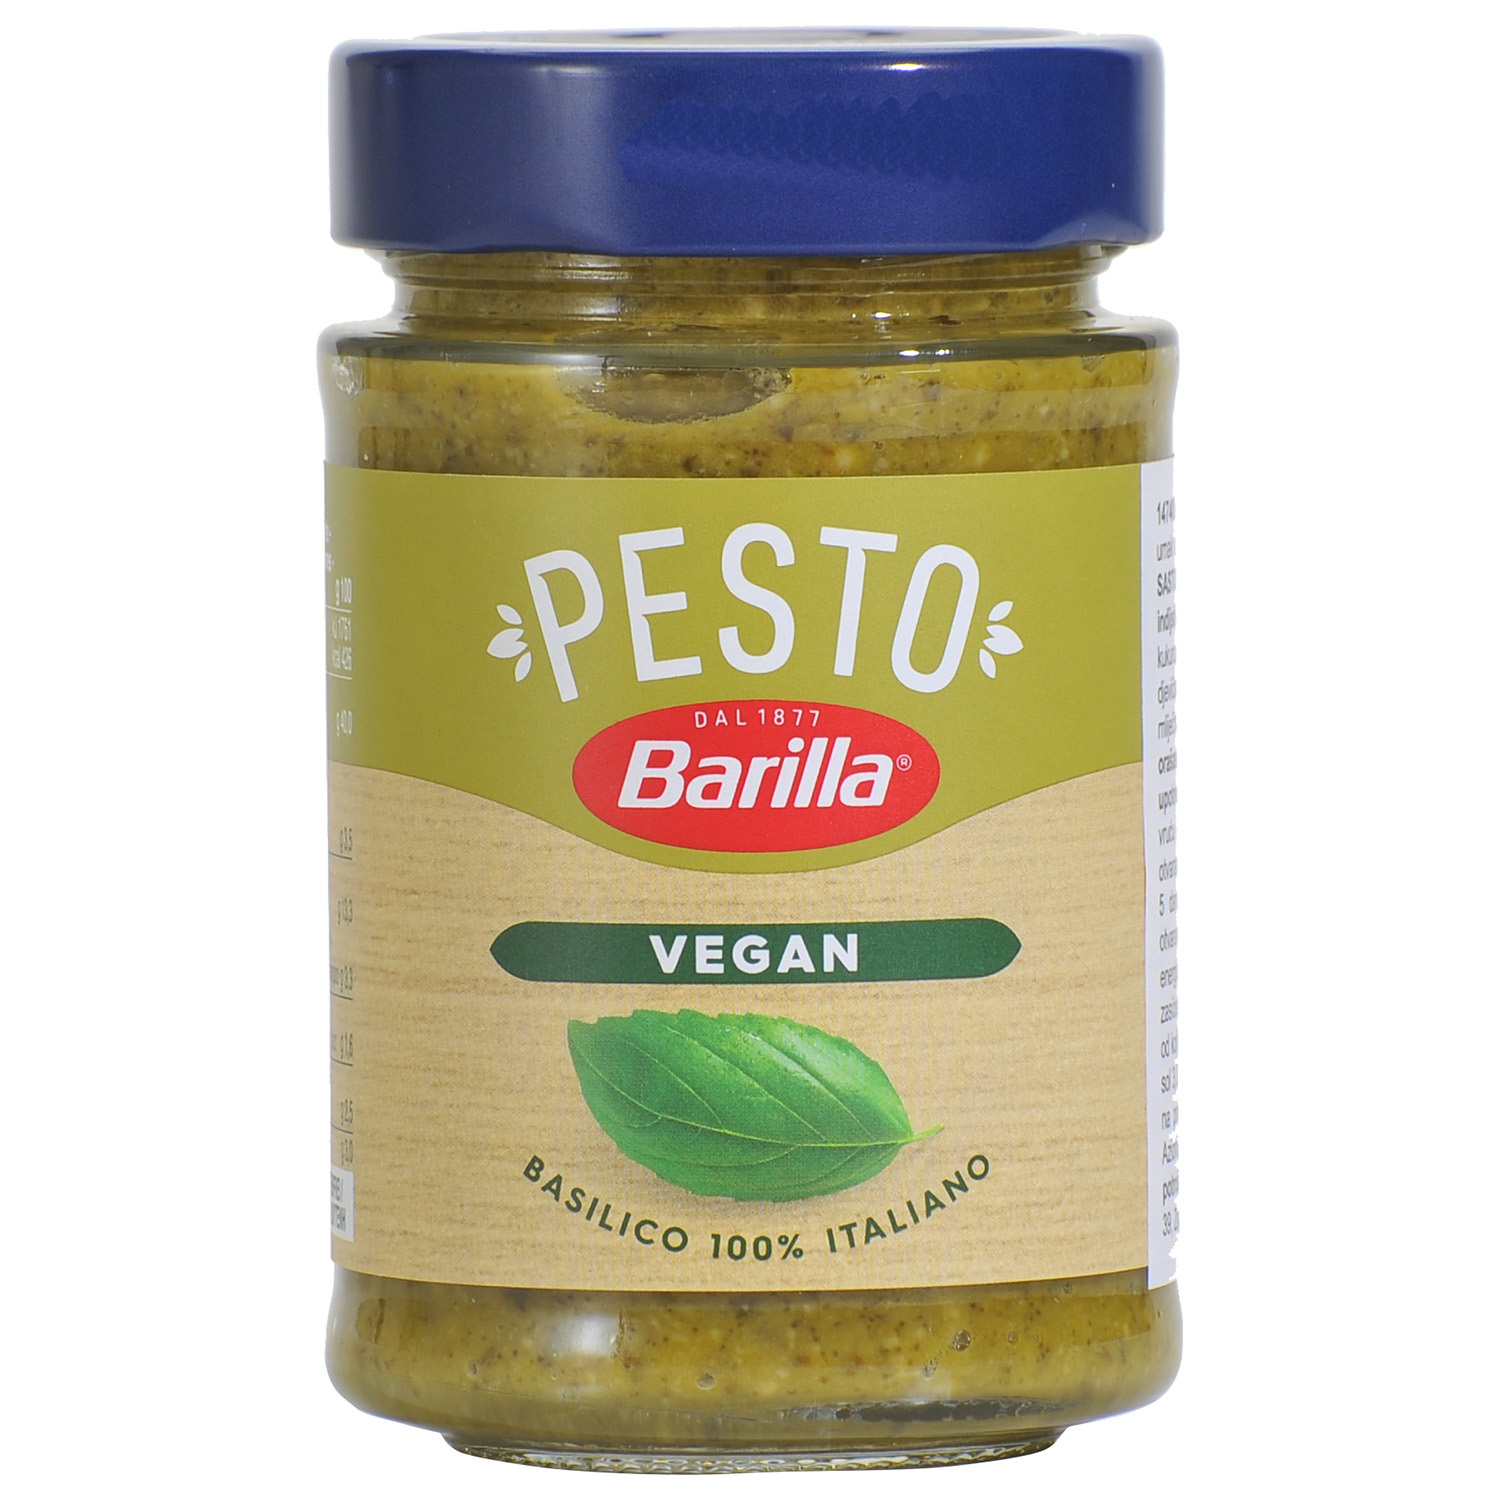 Pesto Barilla Vegan 195gr